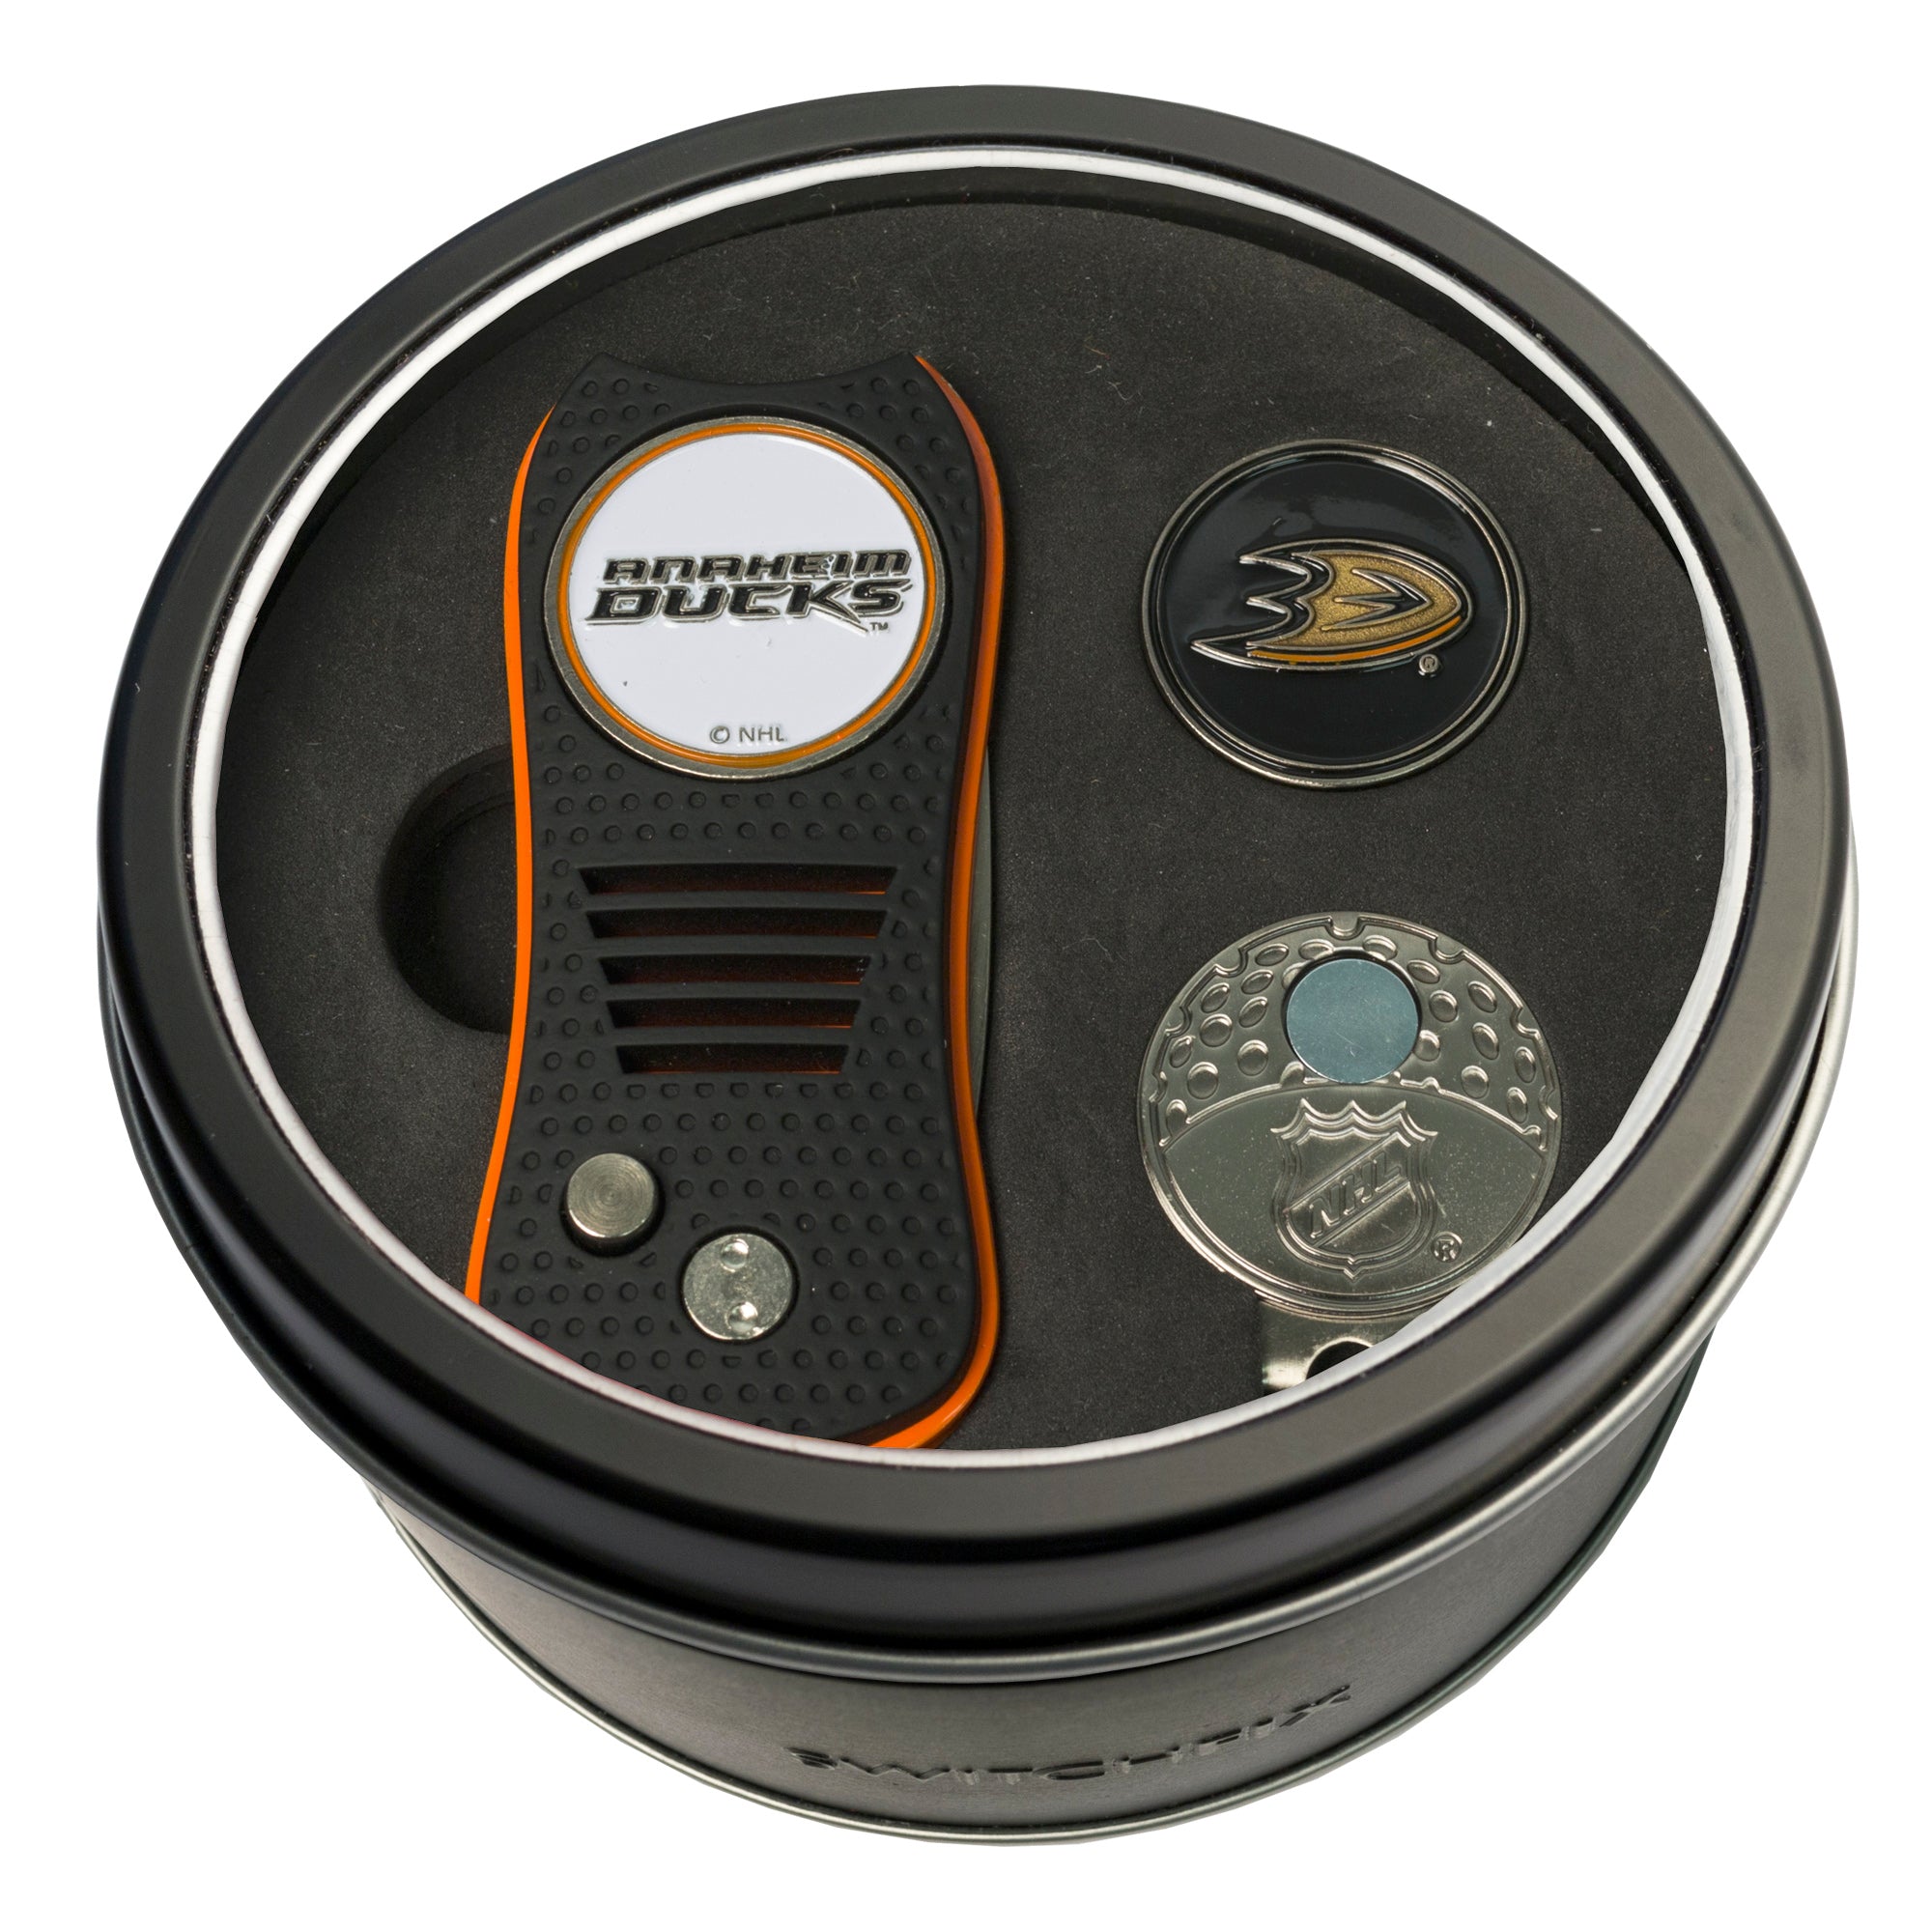 Anaheim Ducks Switchblade Divot Tool + Cap Clip + Ball Marker Tin Gift Set